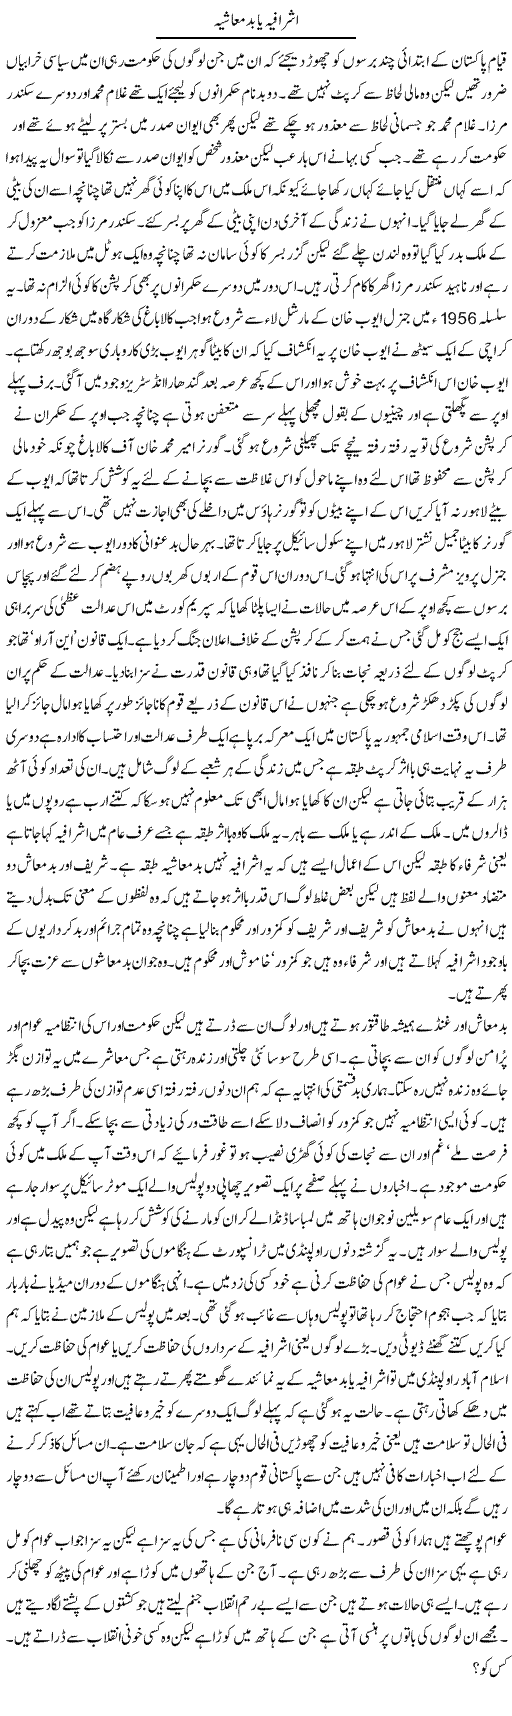 Ashrafia Badmashia Express Column Abdul Qadir Hasan 23 March 2010